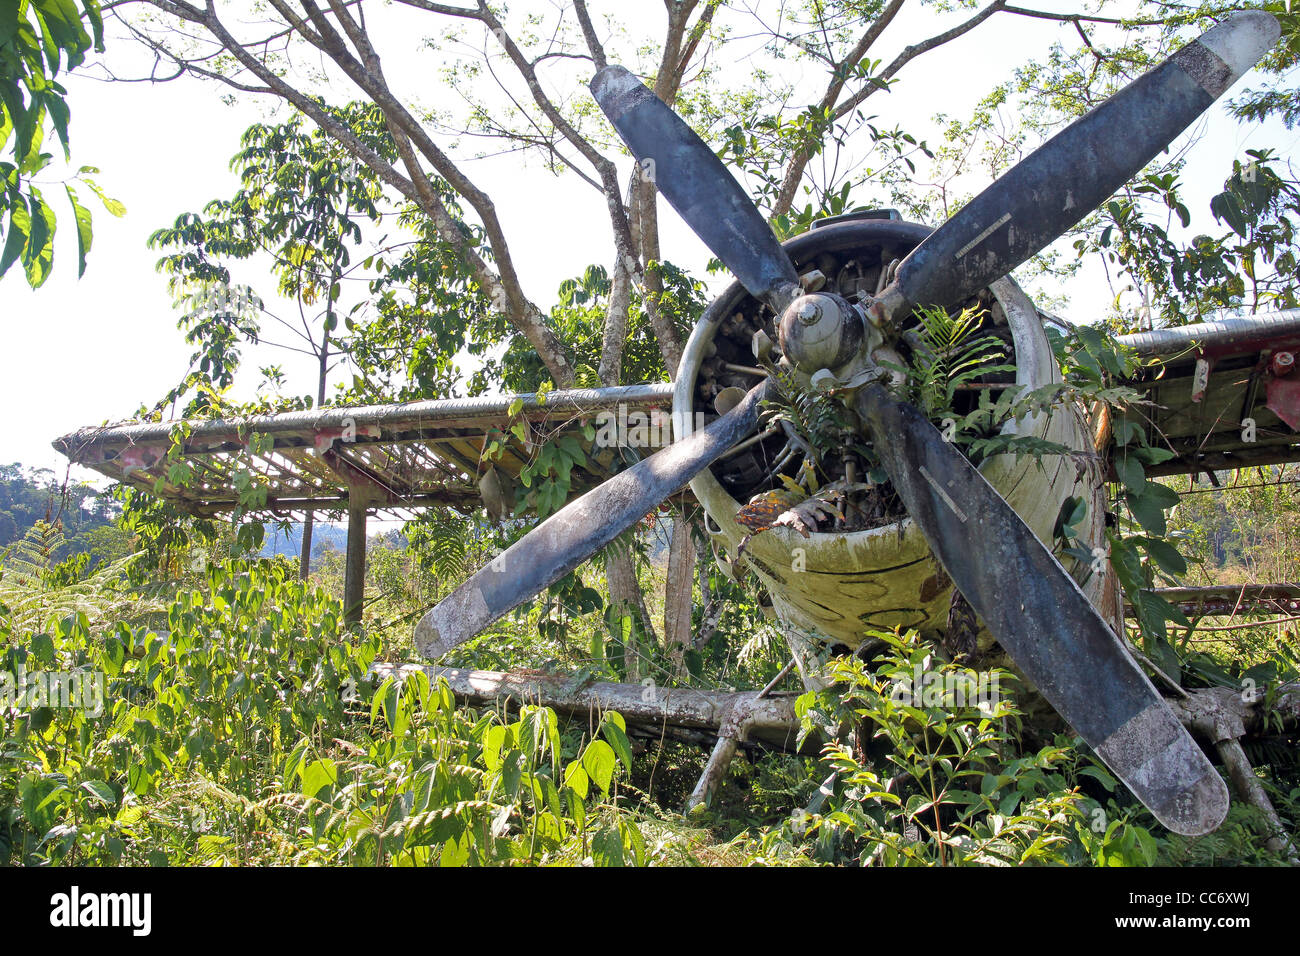 Décalage avant de voir l'avion russe s'écrase en Amazonie péruvienne Banque D'Images